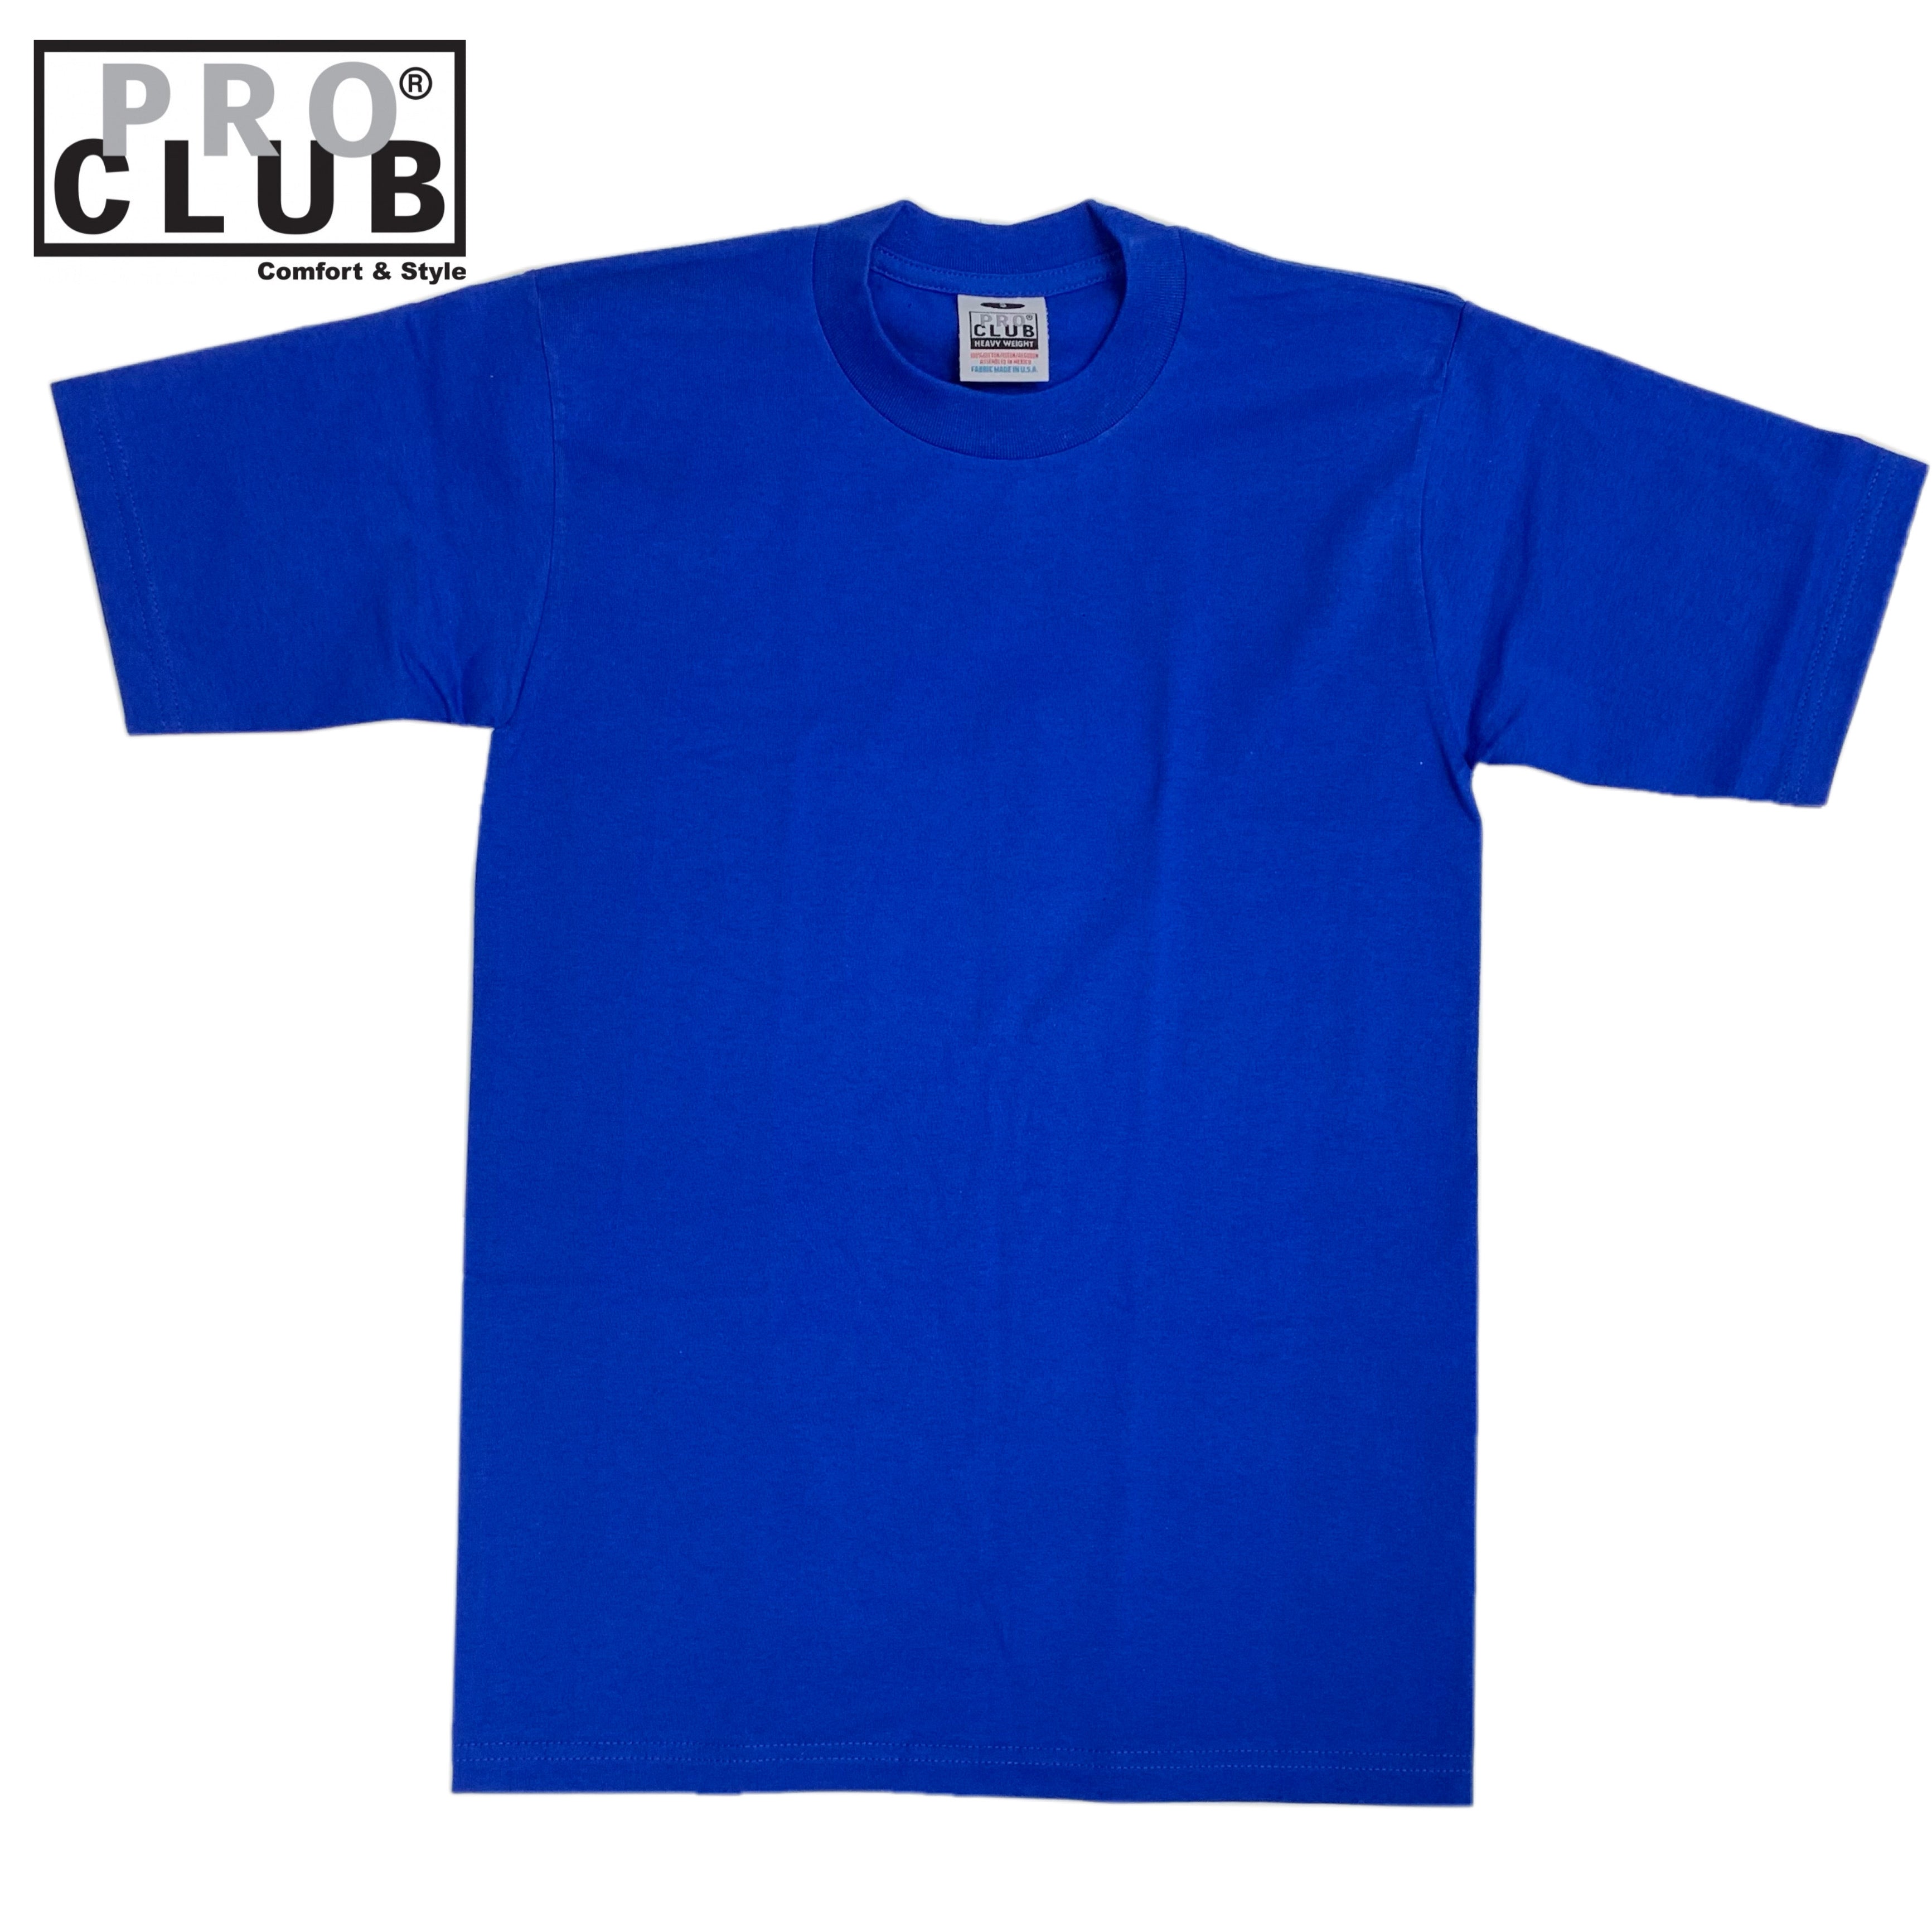 Proclub, Shirts & Tops